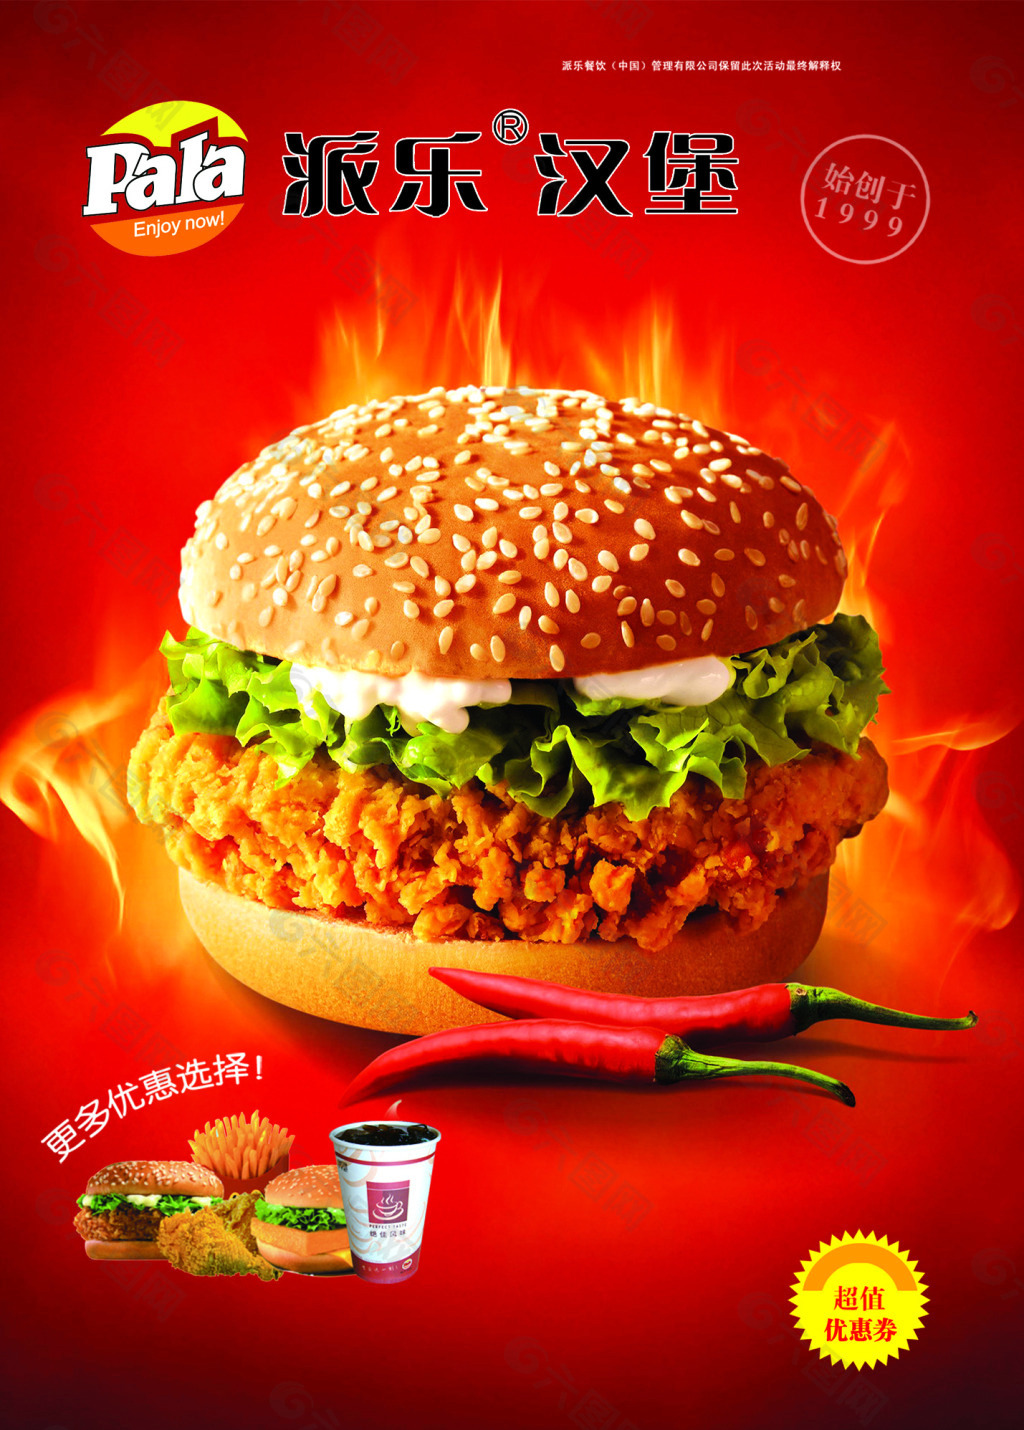 派乐香辣鸡腿汉堡宣传广告